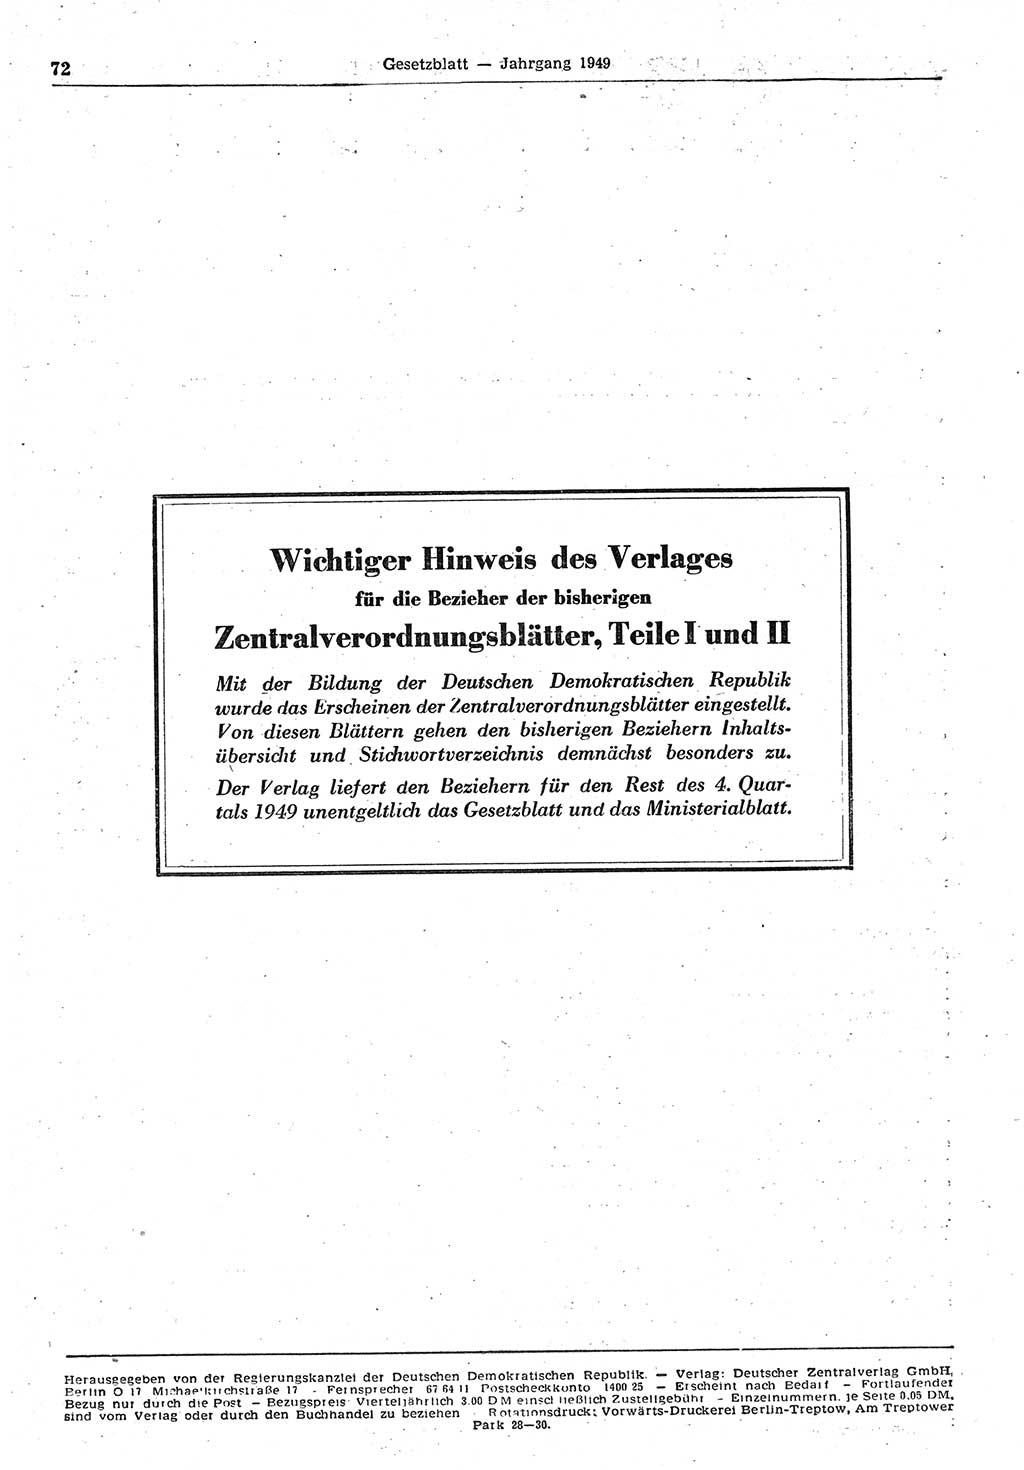 Gesetzblatt (GBl.) der Deutschen Demokratischen Republik (DDR) 1949, Seite 72 (GBl. DDR 1949, S. 72)